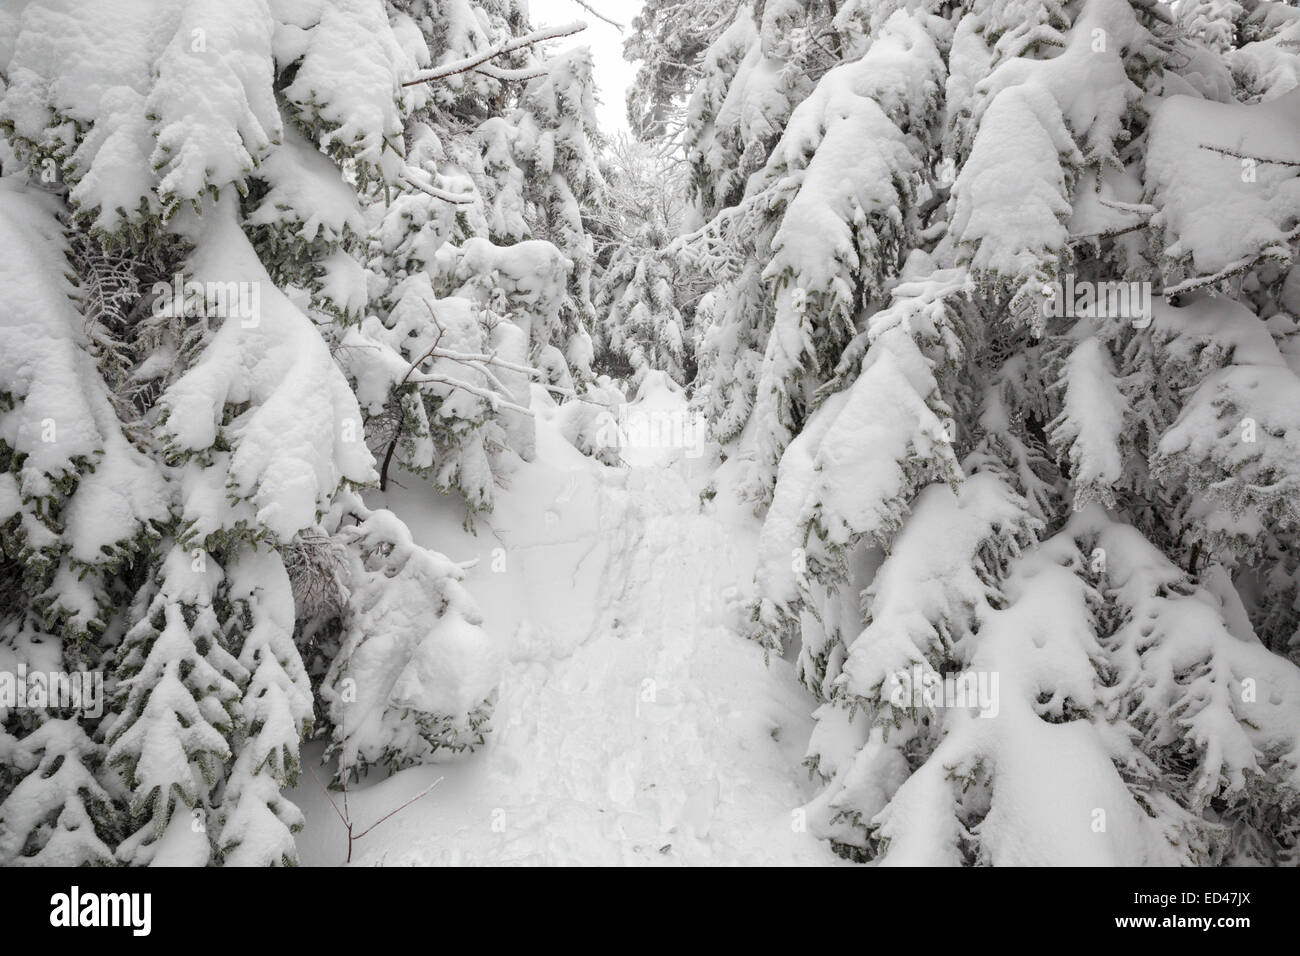 La forêt couverte de neige le long de l'Appalachian Trail (Kinsman Ridge Trail) dans la région de Kinsman encoche des Montagnes Blanches du New Hampshire, USA Banque D'Images